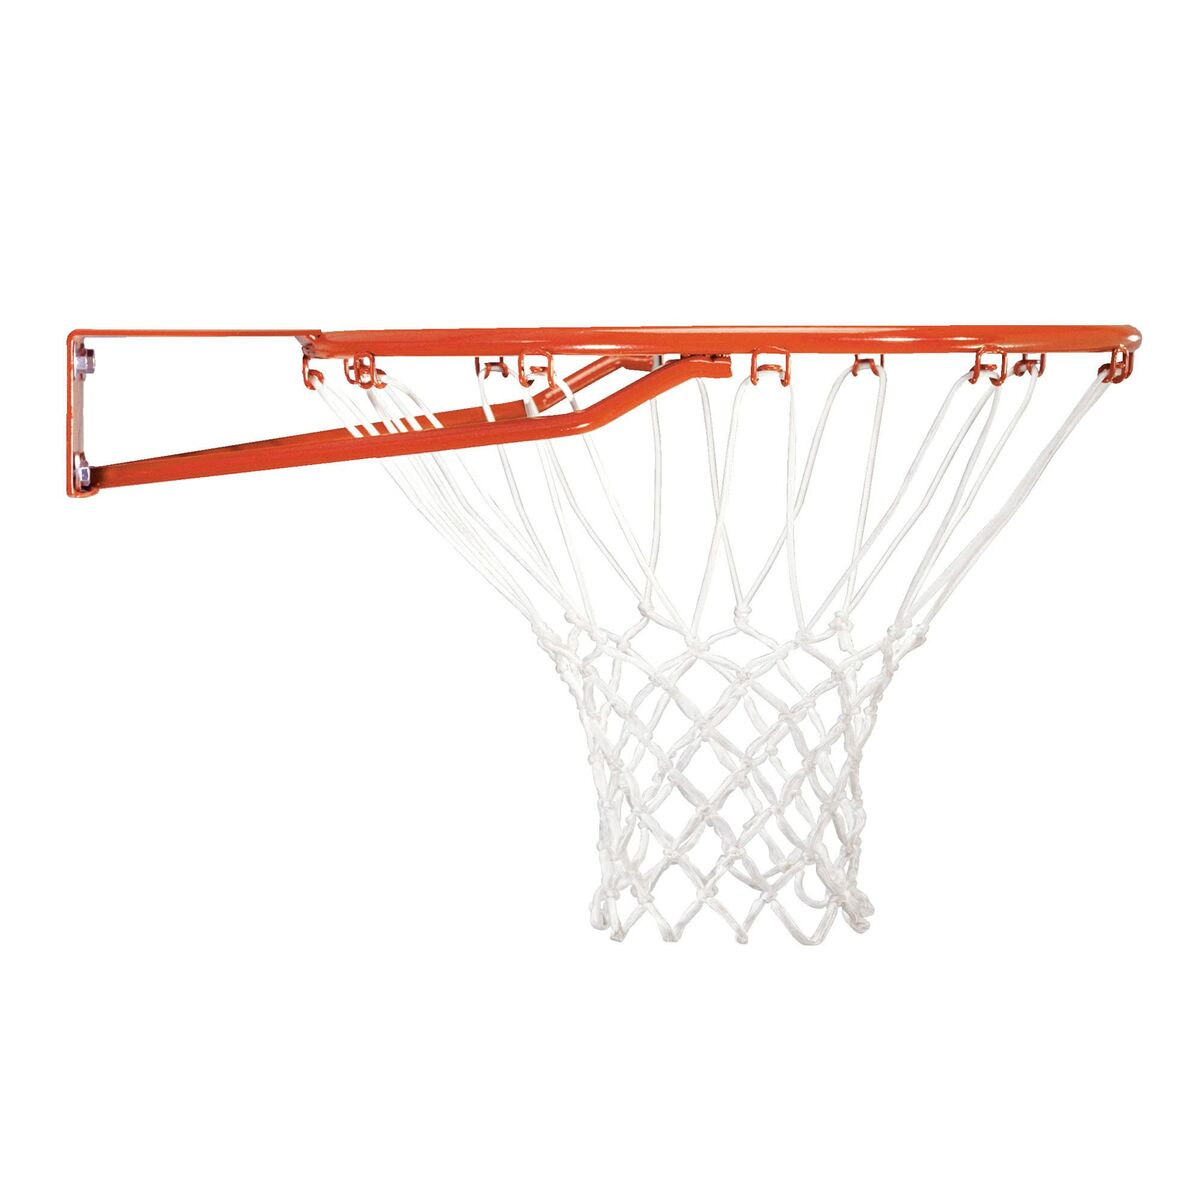 Panier de Basket Lifetime 112 x 72 x 60 cm